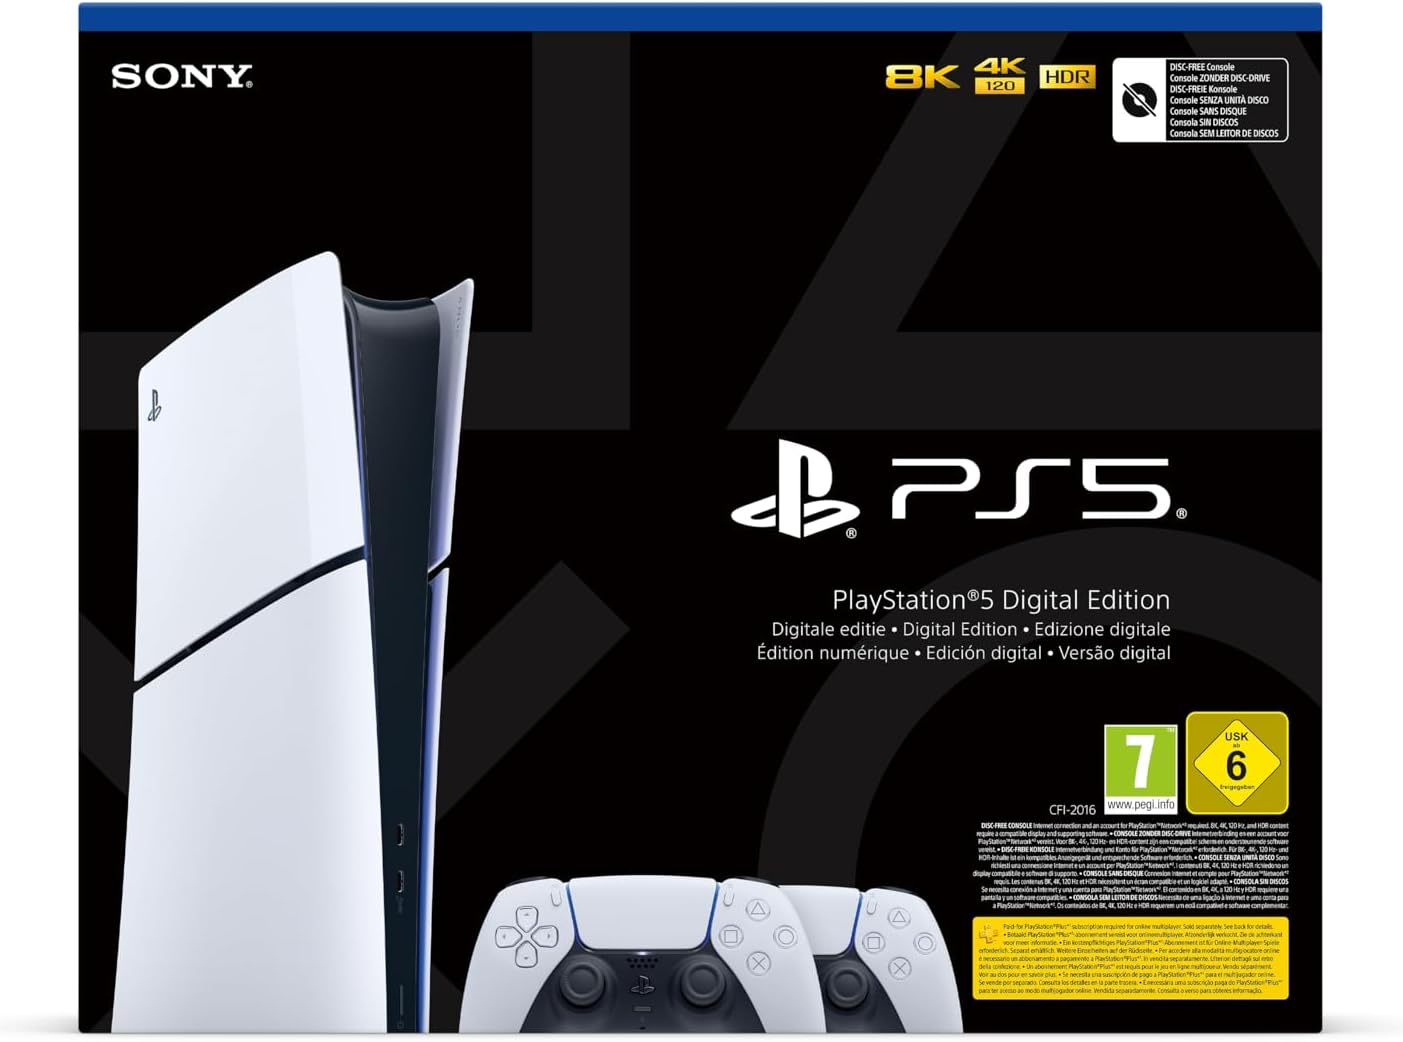 PlayStation 5 Slim aumenta ligeramente el consumo y temperatura